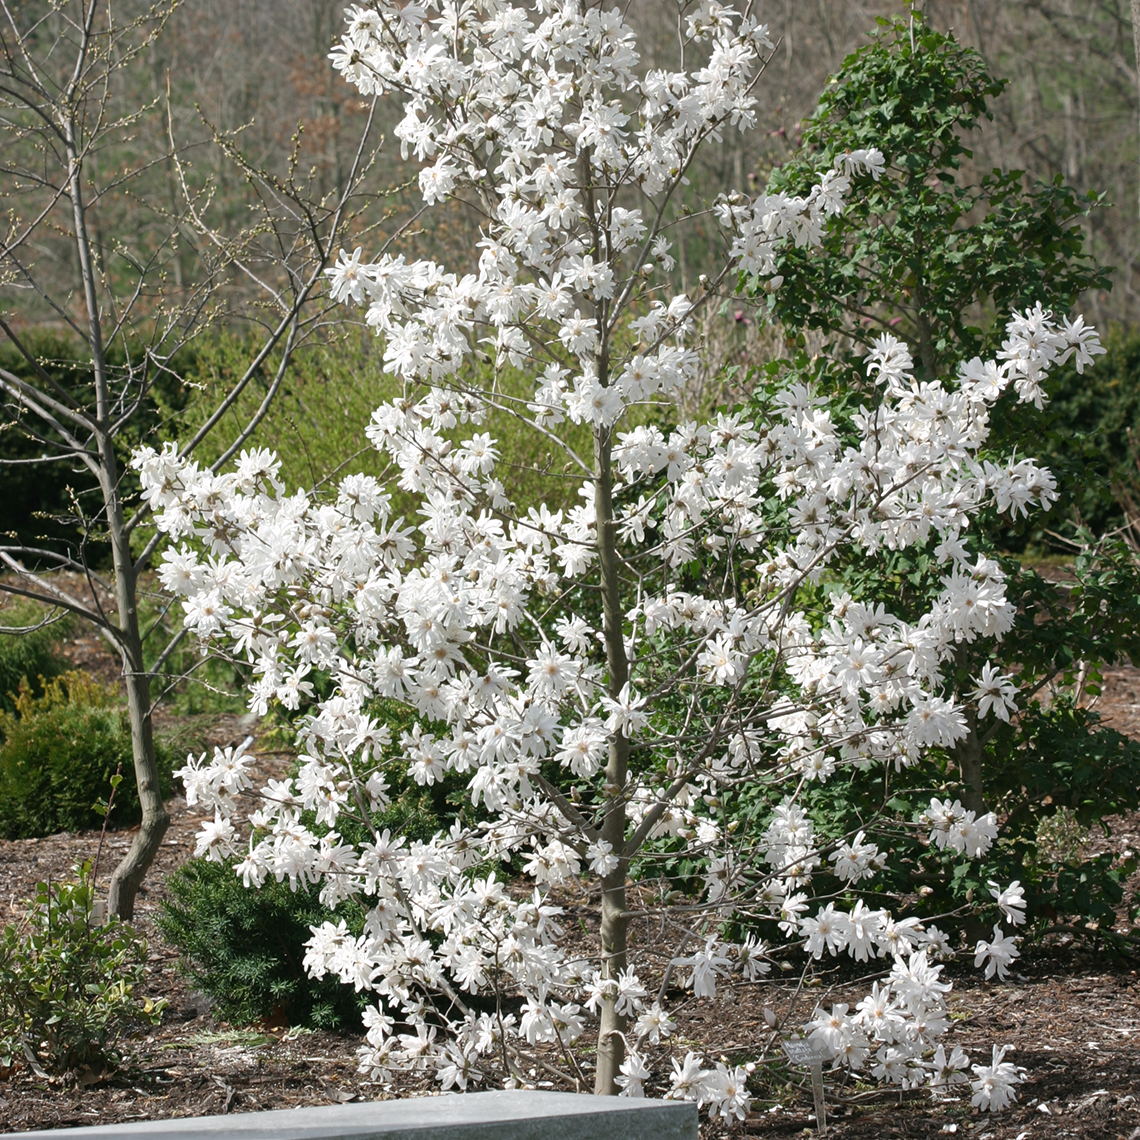 Centennial Magnolia blooming heavily in a garden bed